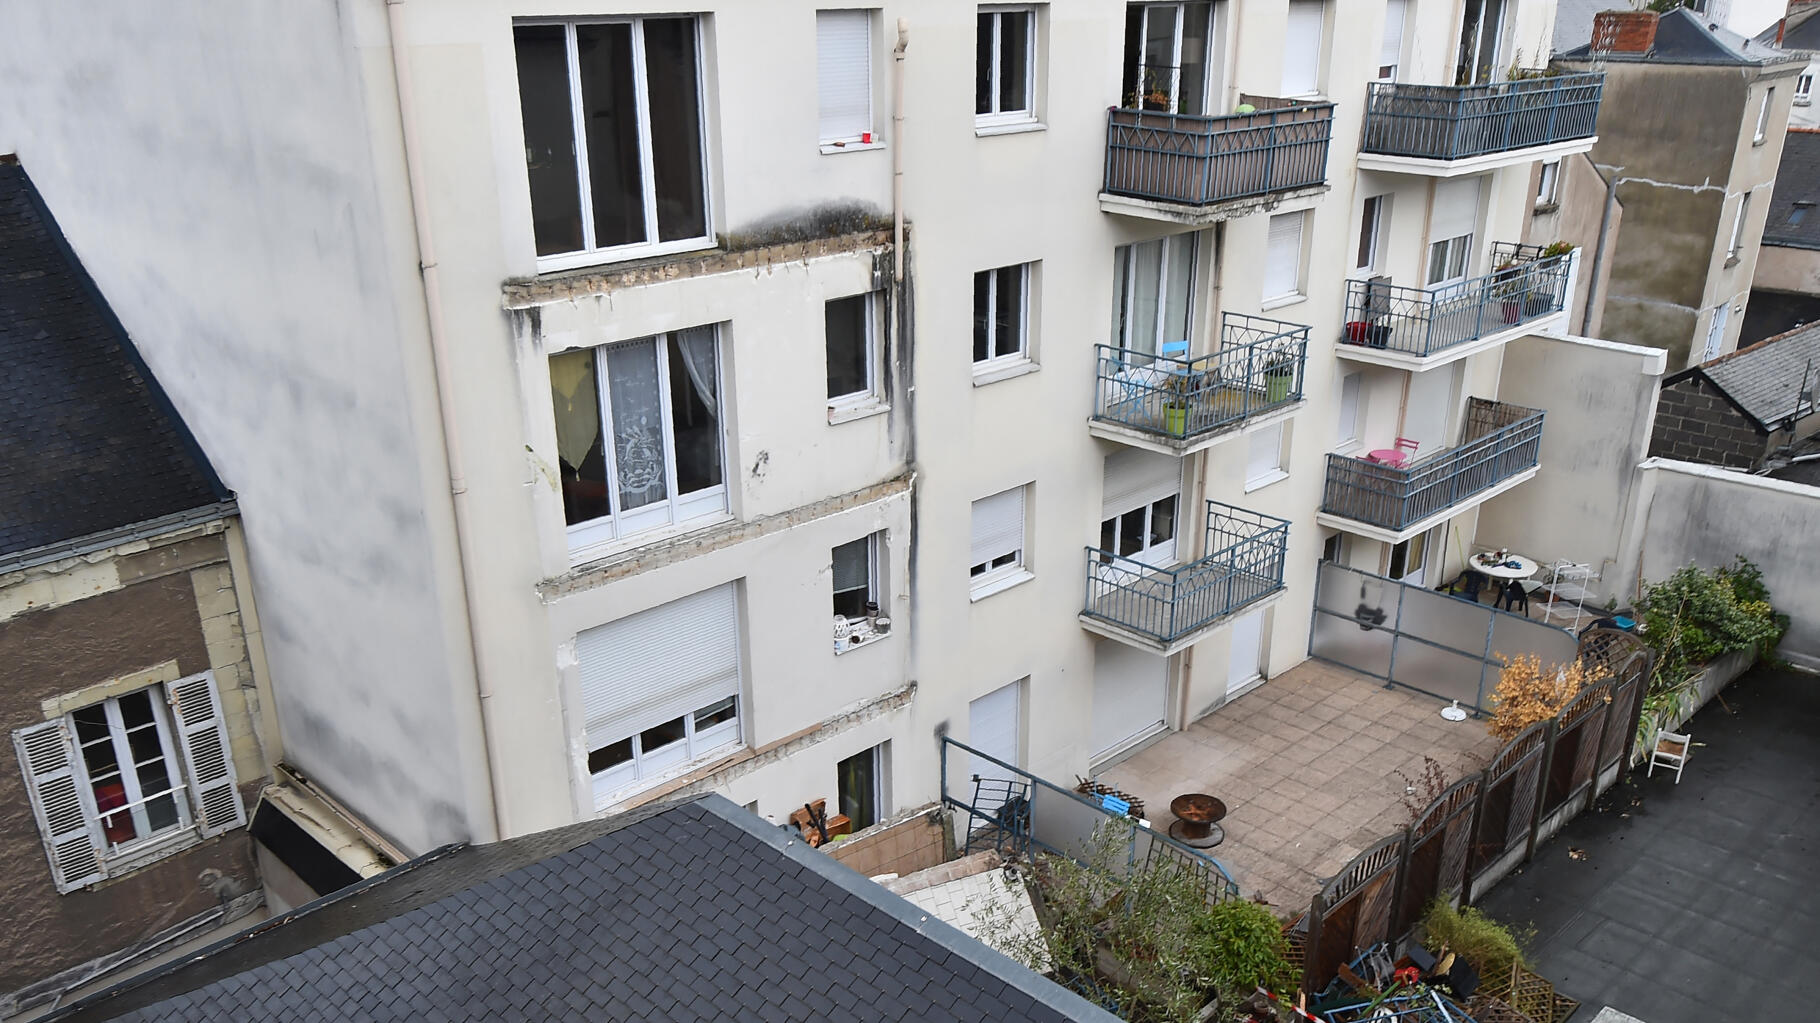 La chute d’un balcon à Angers avait fait 4 morts en 2016, le procès en appel s’ouvre ce lundi